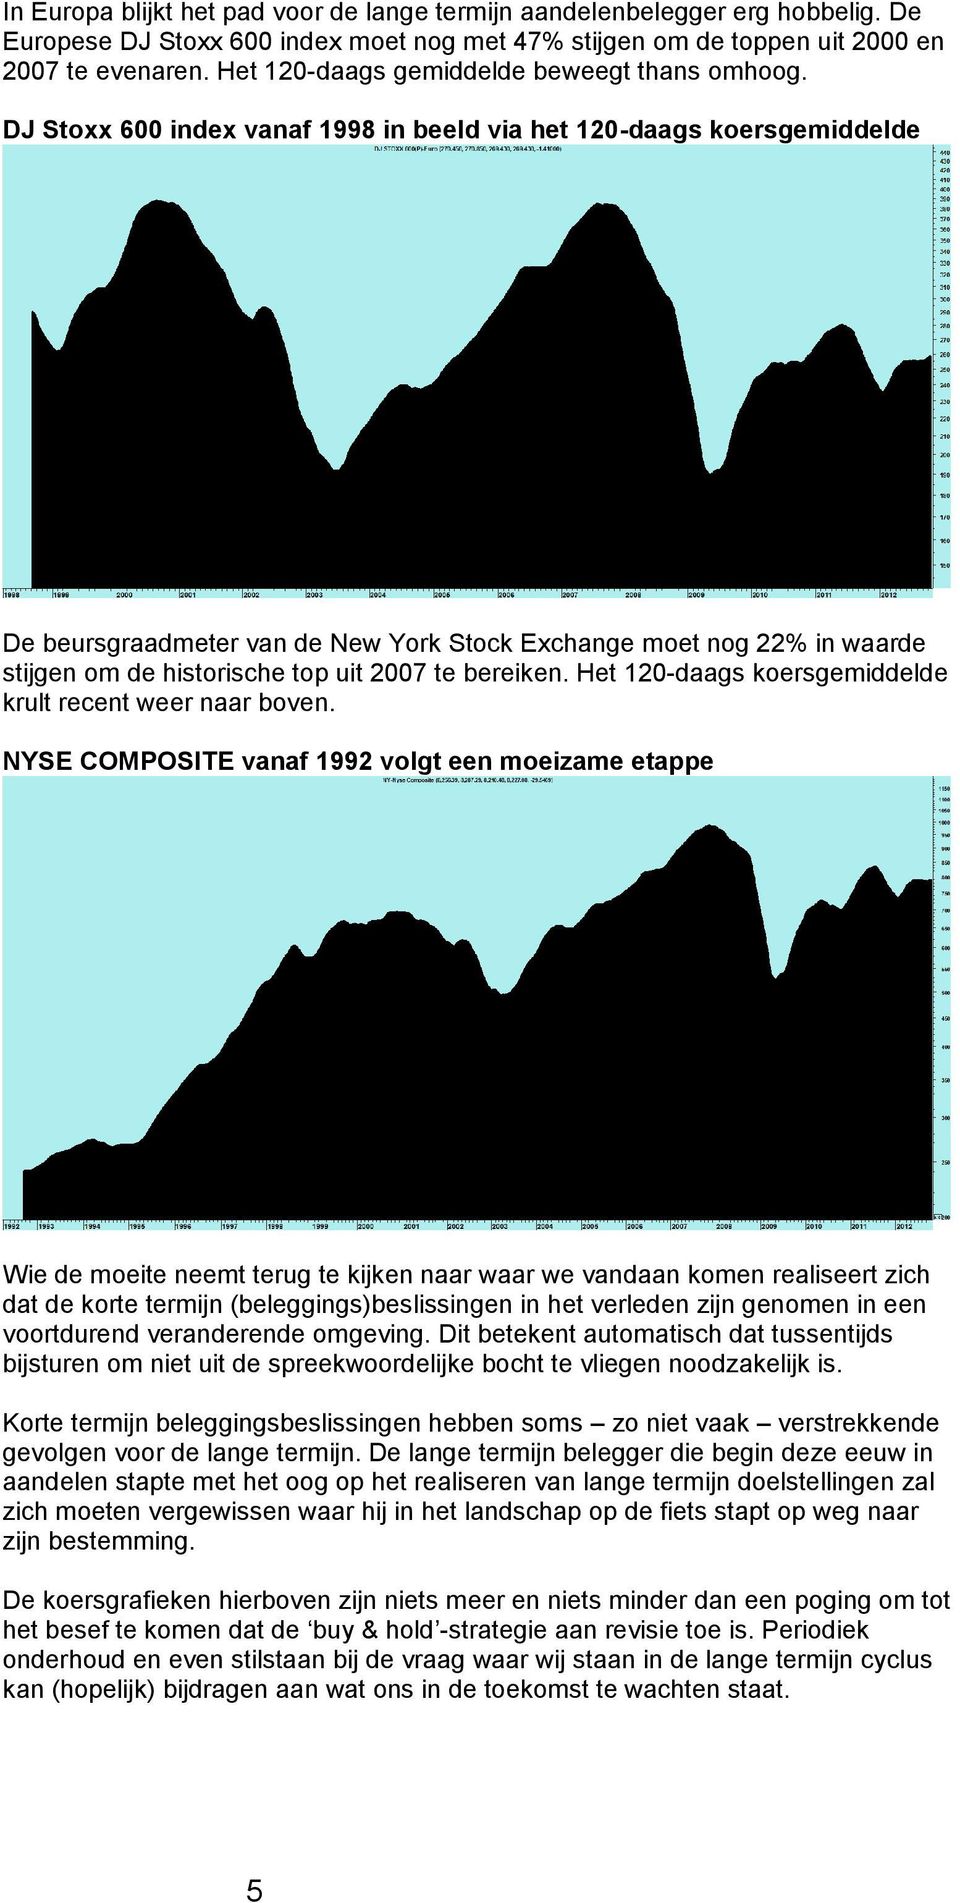 DJ Stoxx 600 index vanaf 1998 in beeld via het 120-daags koersgemiddelde De beursgraadmeter van de New York Stock Exchange moet nog 22% in waarde stijgen om de historische top uit 2007 te bereiken.